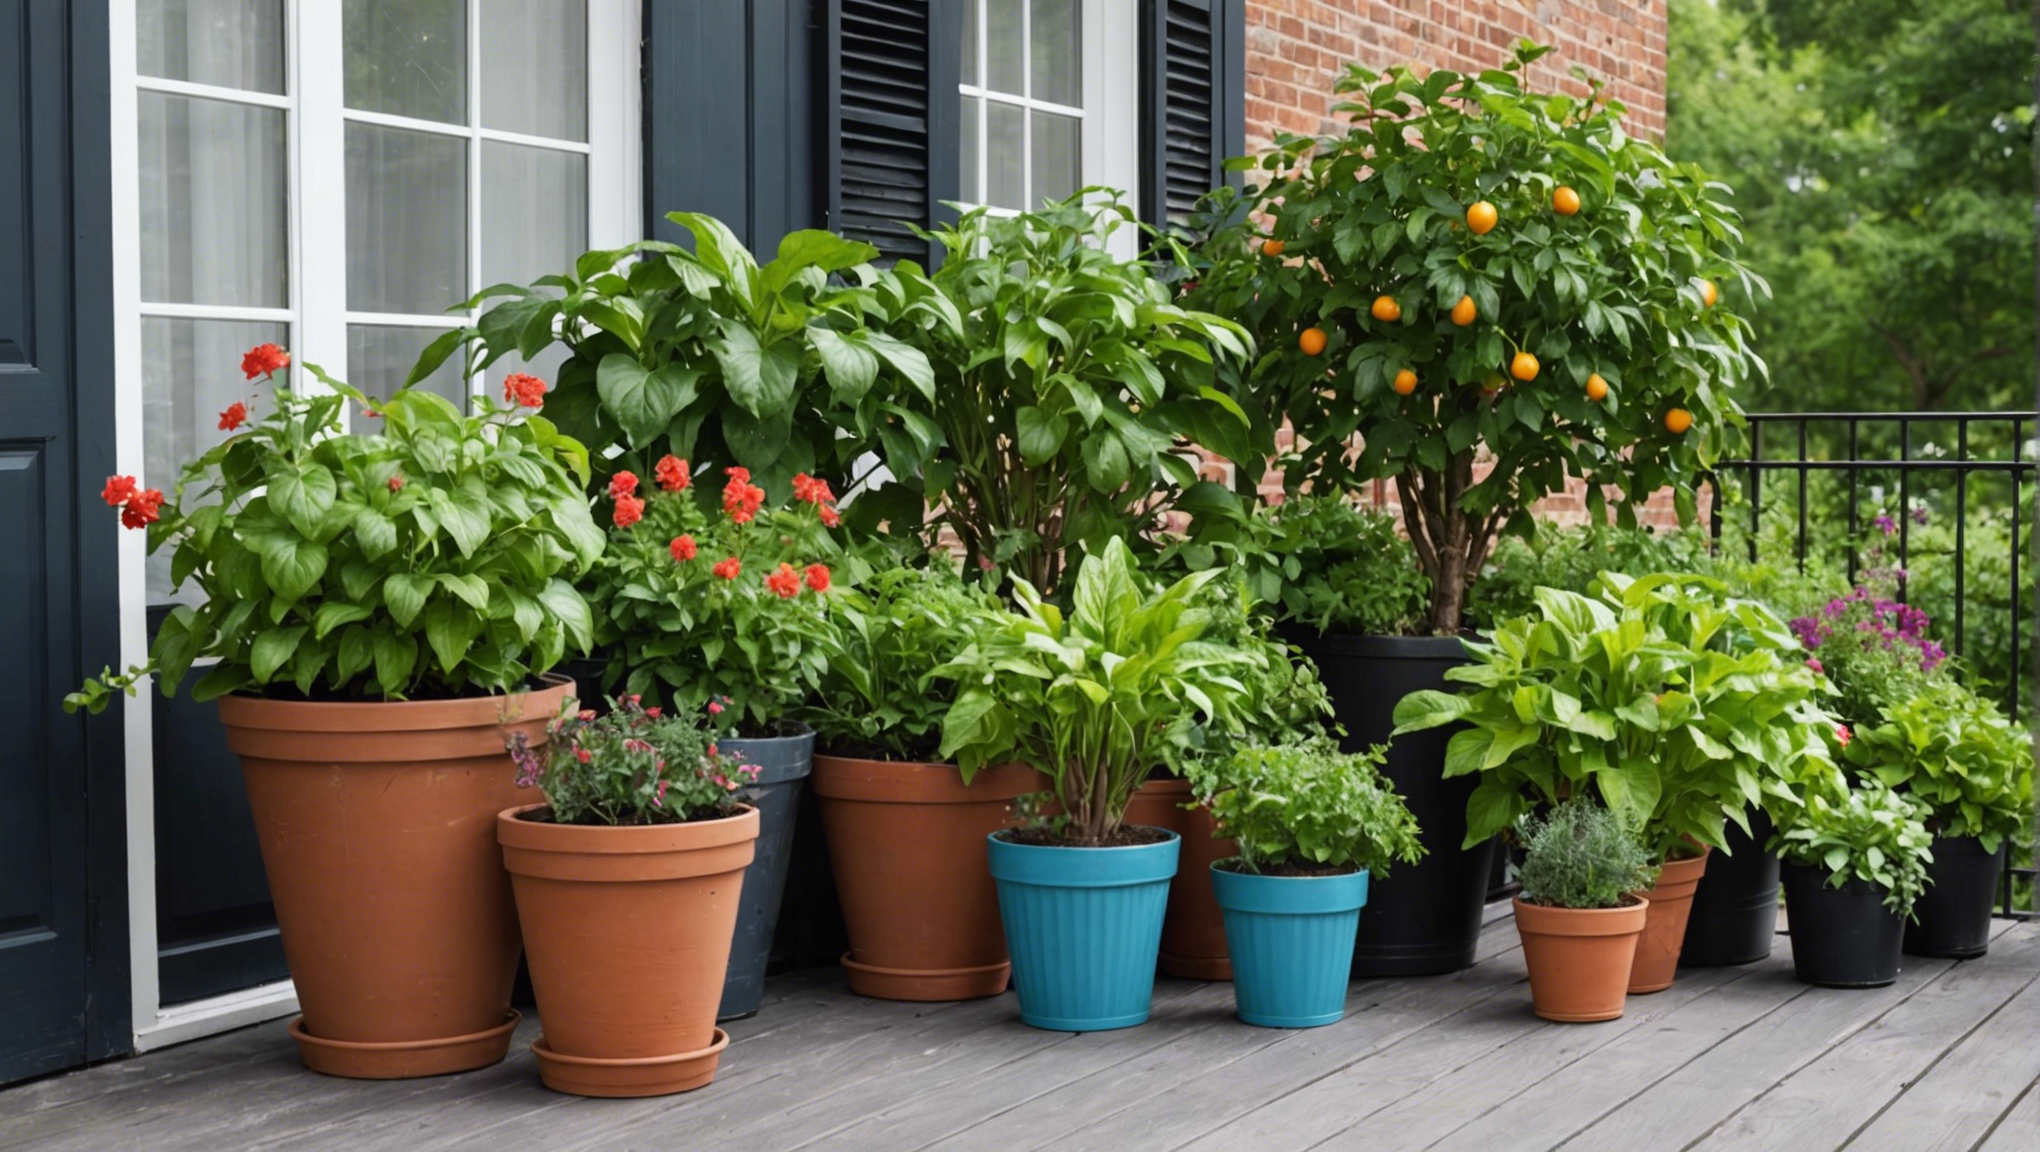 découvrez comment transformer votre balcon en un jardin de saveurs en cultivant un potager, pour profiter de délicieuses récoltes à portée de main.